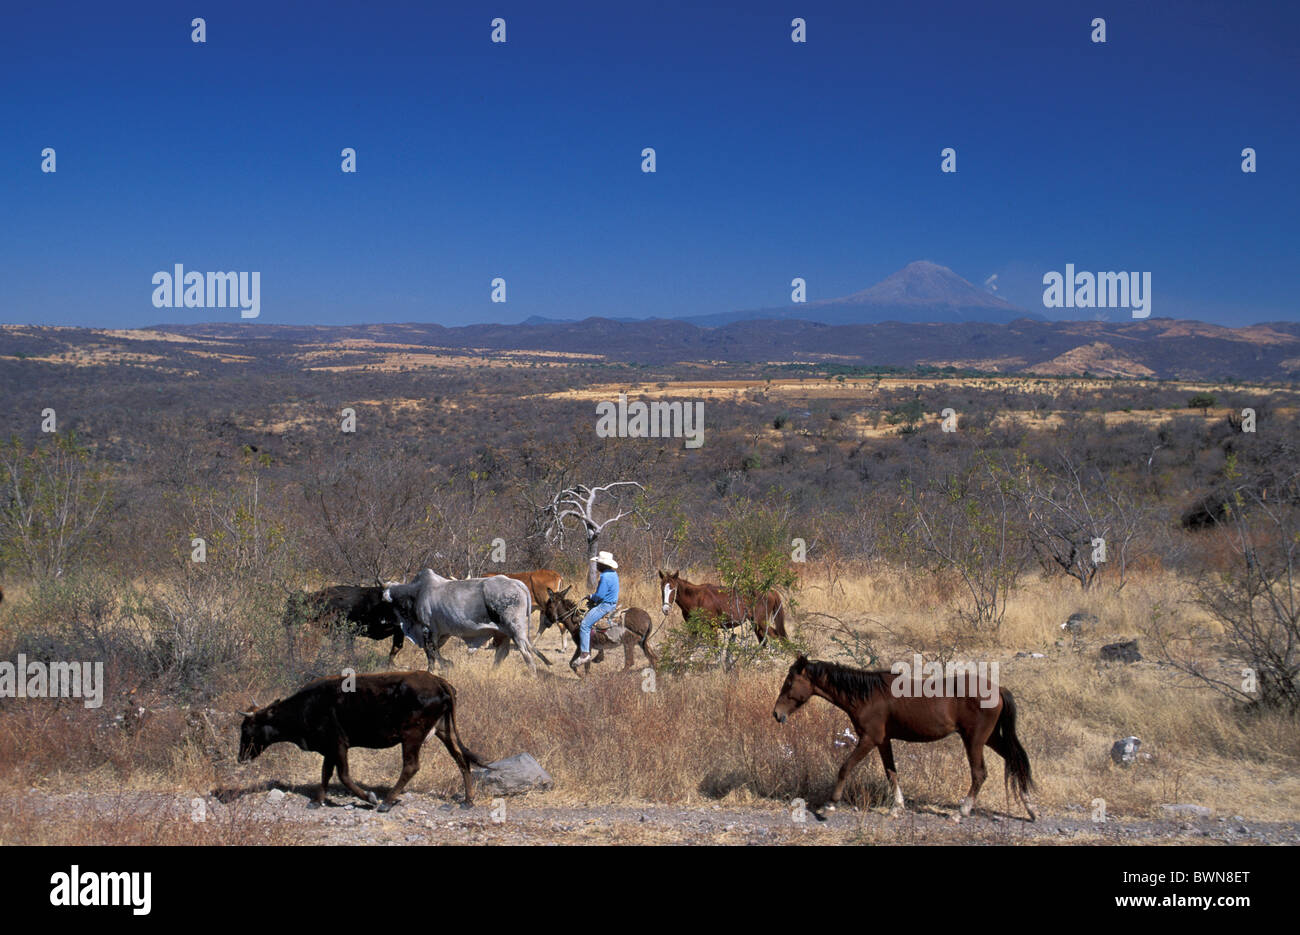 Mexico Central America America Cowboy Vaquero near Izucar de Matamoros Province of Morelos man cattle horse Stock Photo